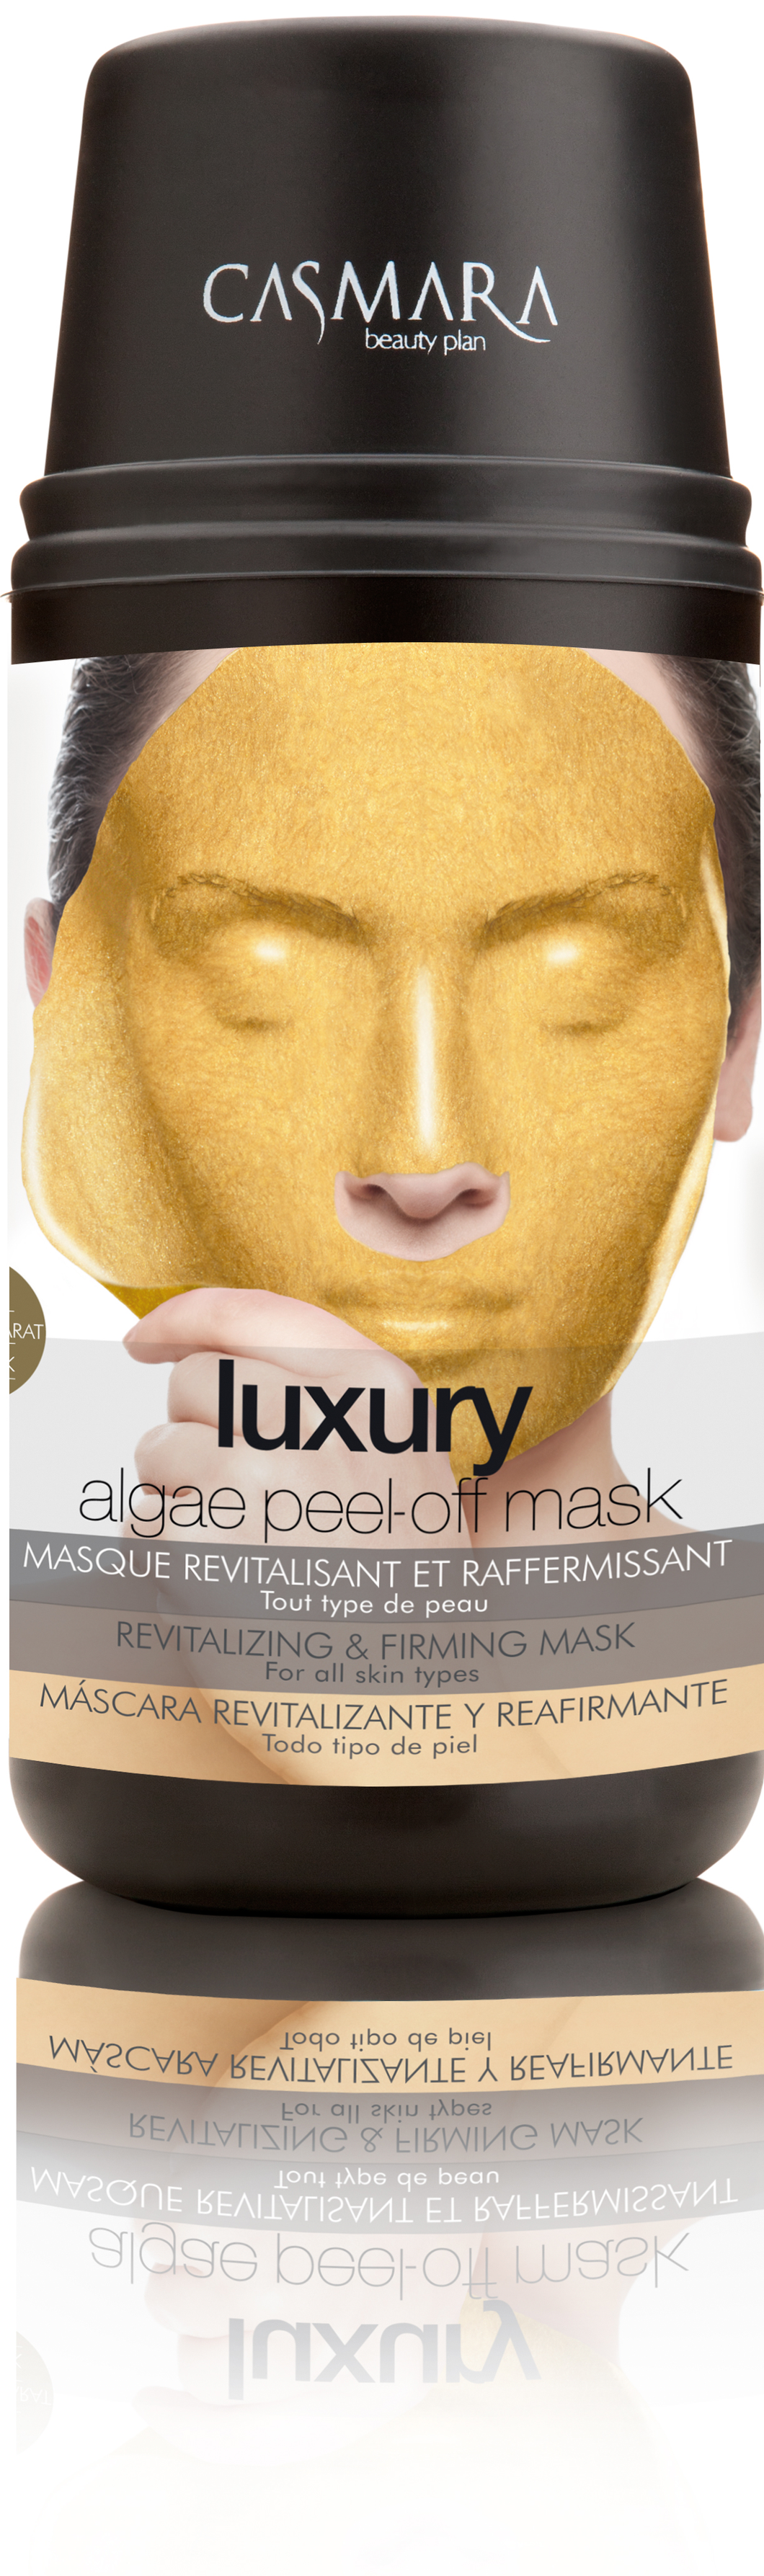 Luxury Mask Kit